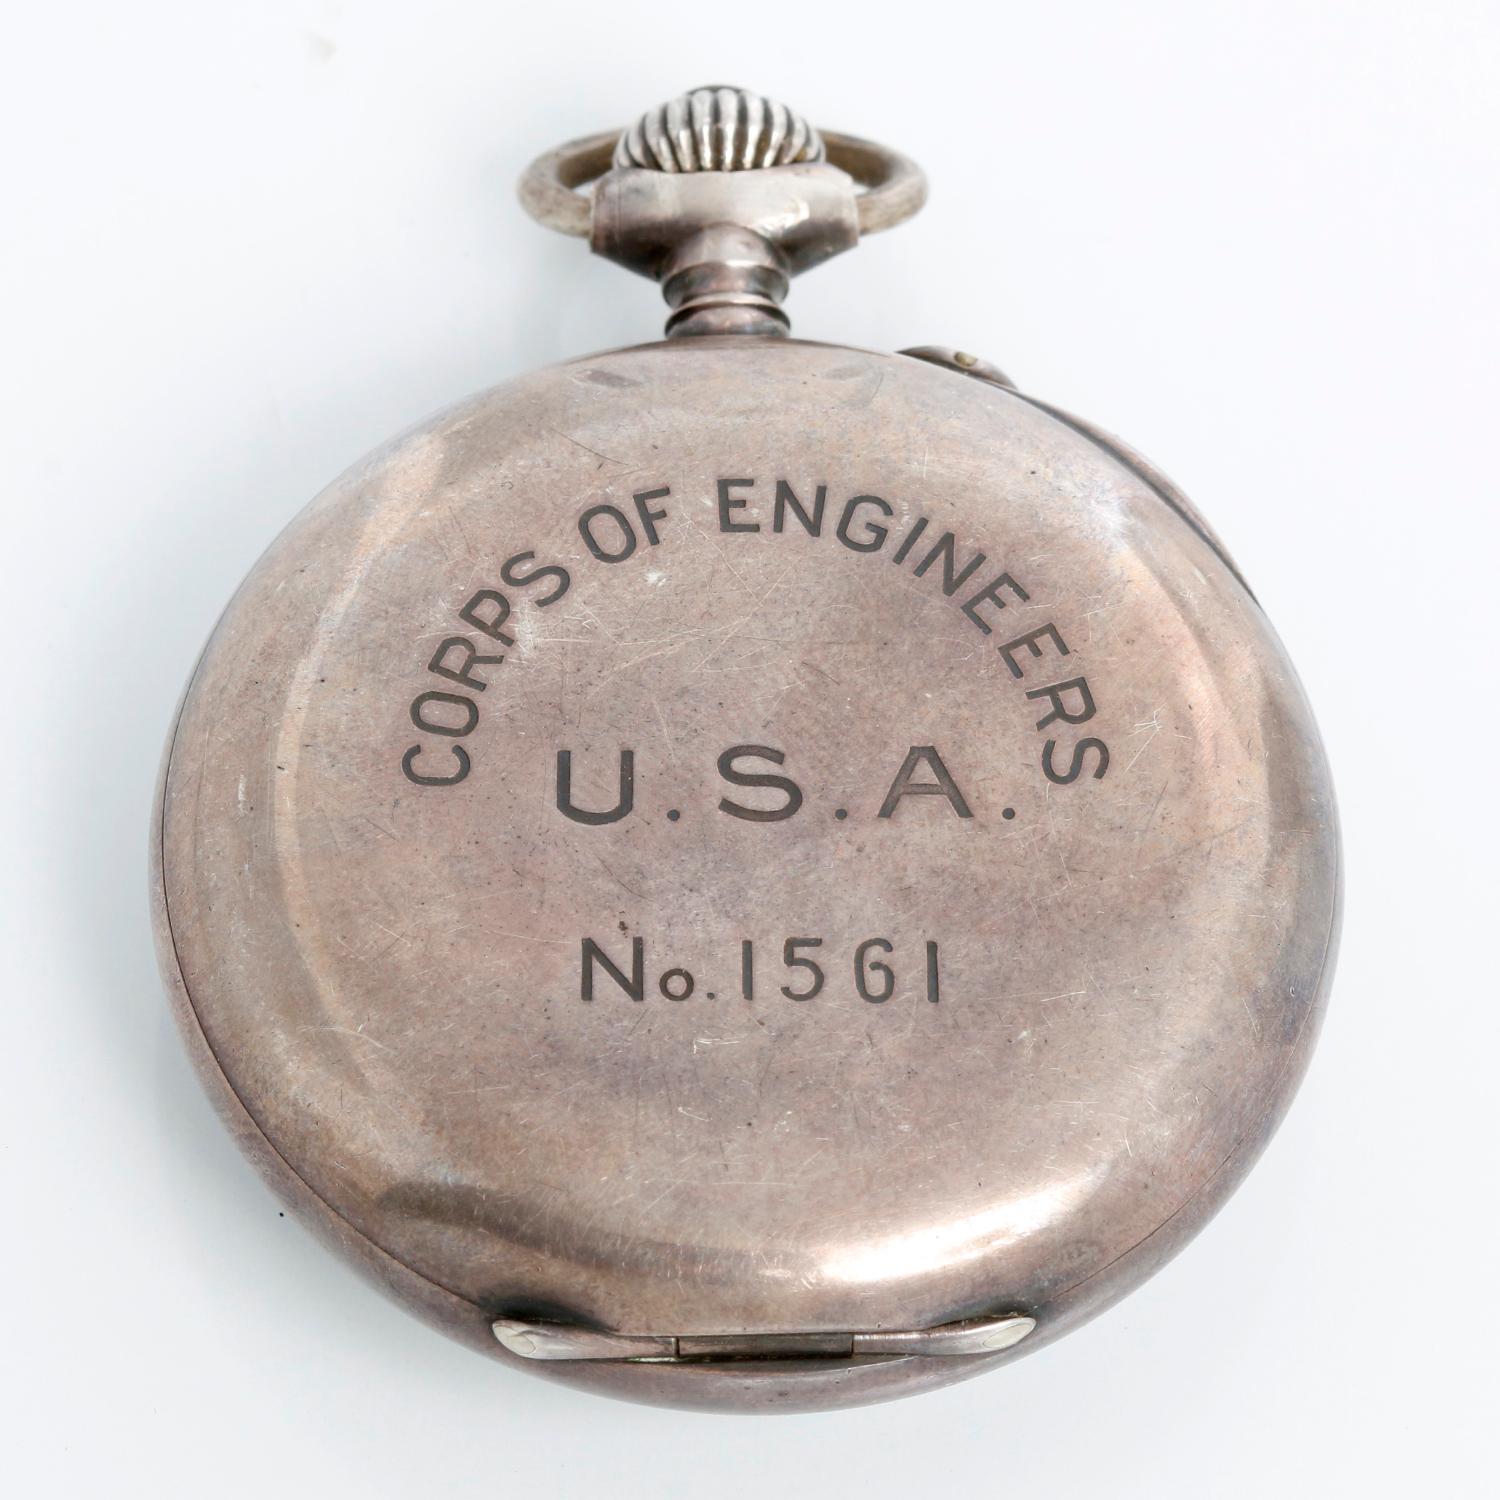 Vacheron Constantin Corps of Engineers Taschenchronograph -  Handaufzug; Ein-Drücker-Chronograph. Gehäuse aus rostfreiem Stahl  ( 52 mm ). Weißes Zifferblatt mit leuchtenden Zeigern und Ziffern. Diese Taschenuhr war Teil einer Bestellung von 5.000